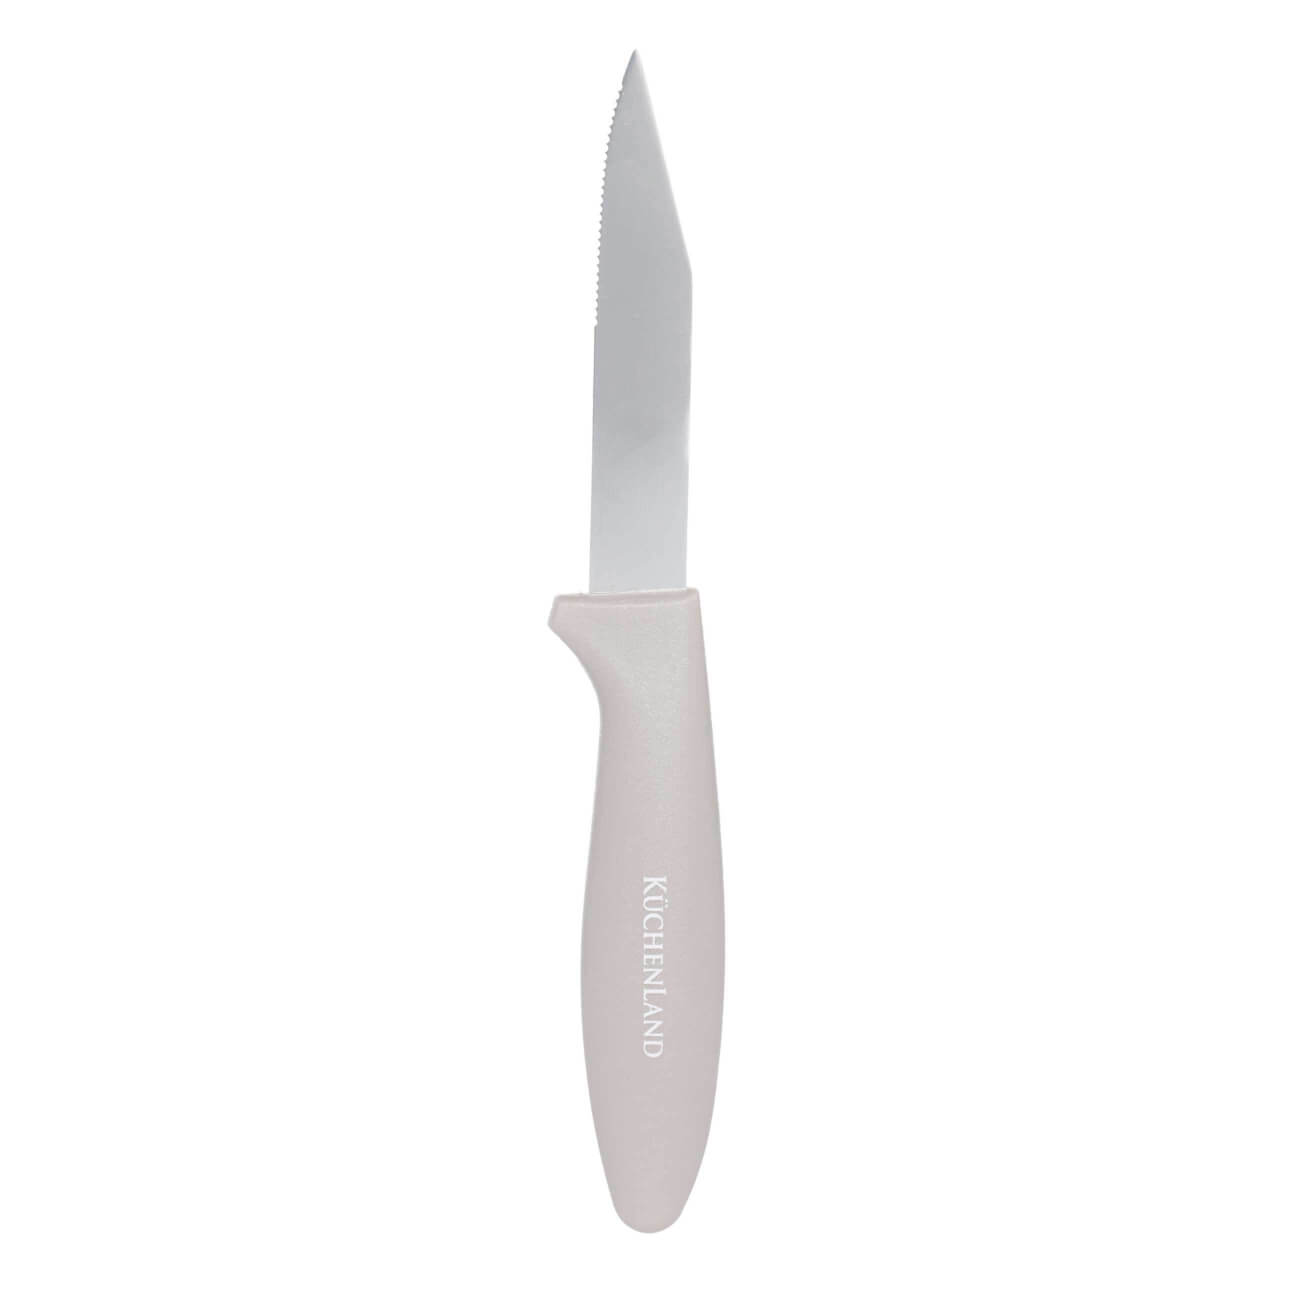 Нож для чистки овощей, 8 см, сталь/пластик, серо-коричневый, Supreme изображение № 1